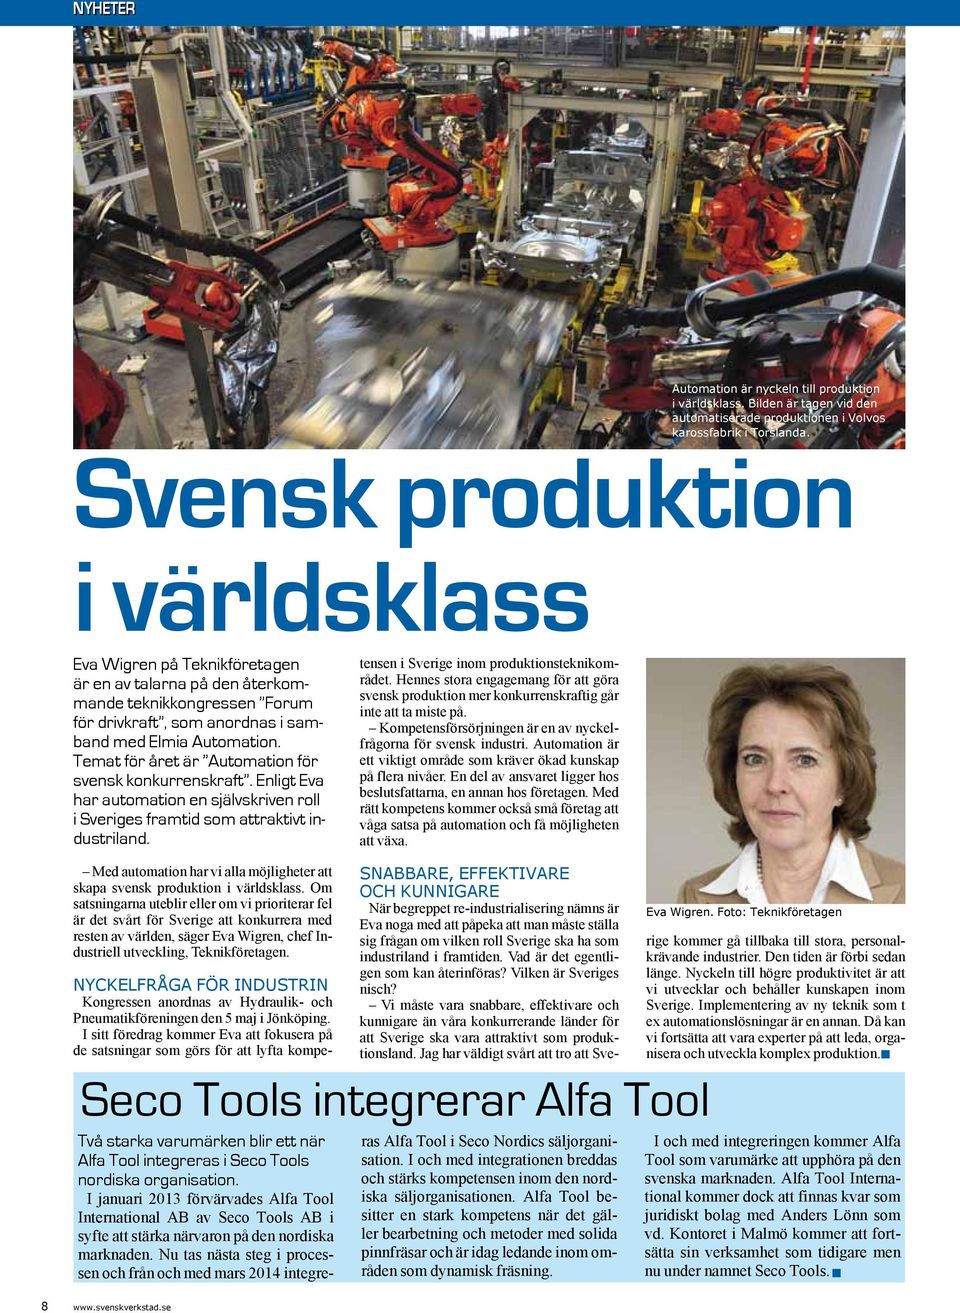 Temat för året är Automation för svensk konkurrenskraft. Enligt Eva har automation en självskriven roll i Sveriges framtid som attraktivt industriland.